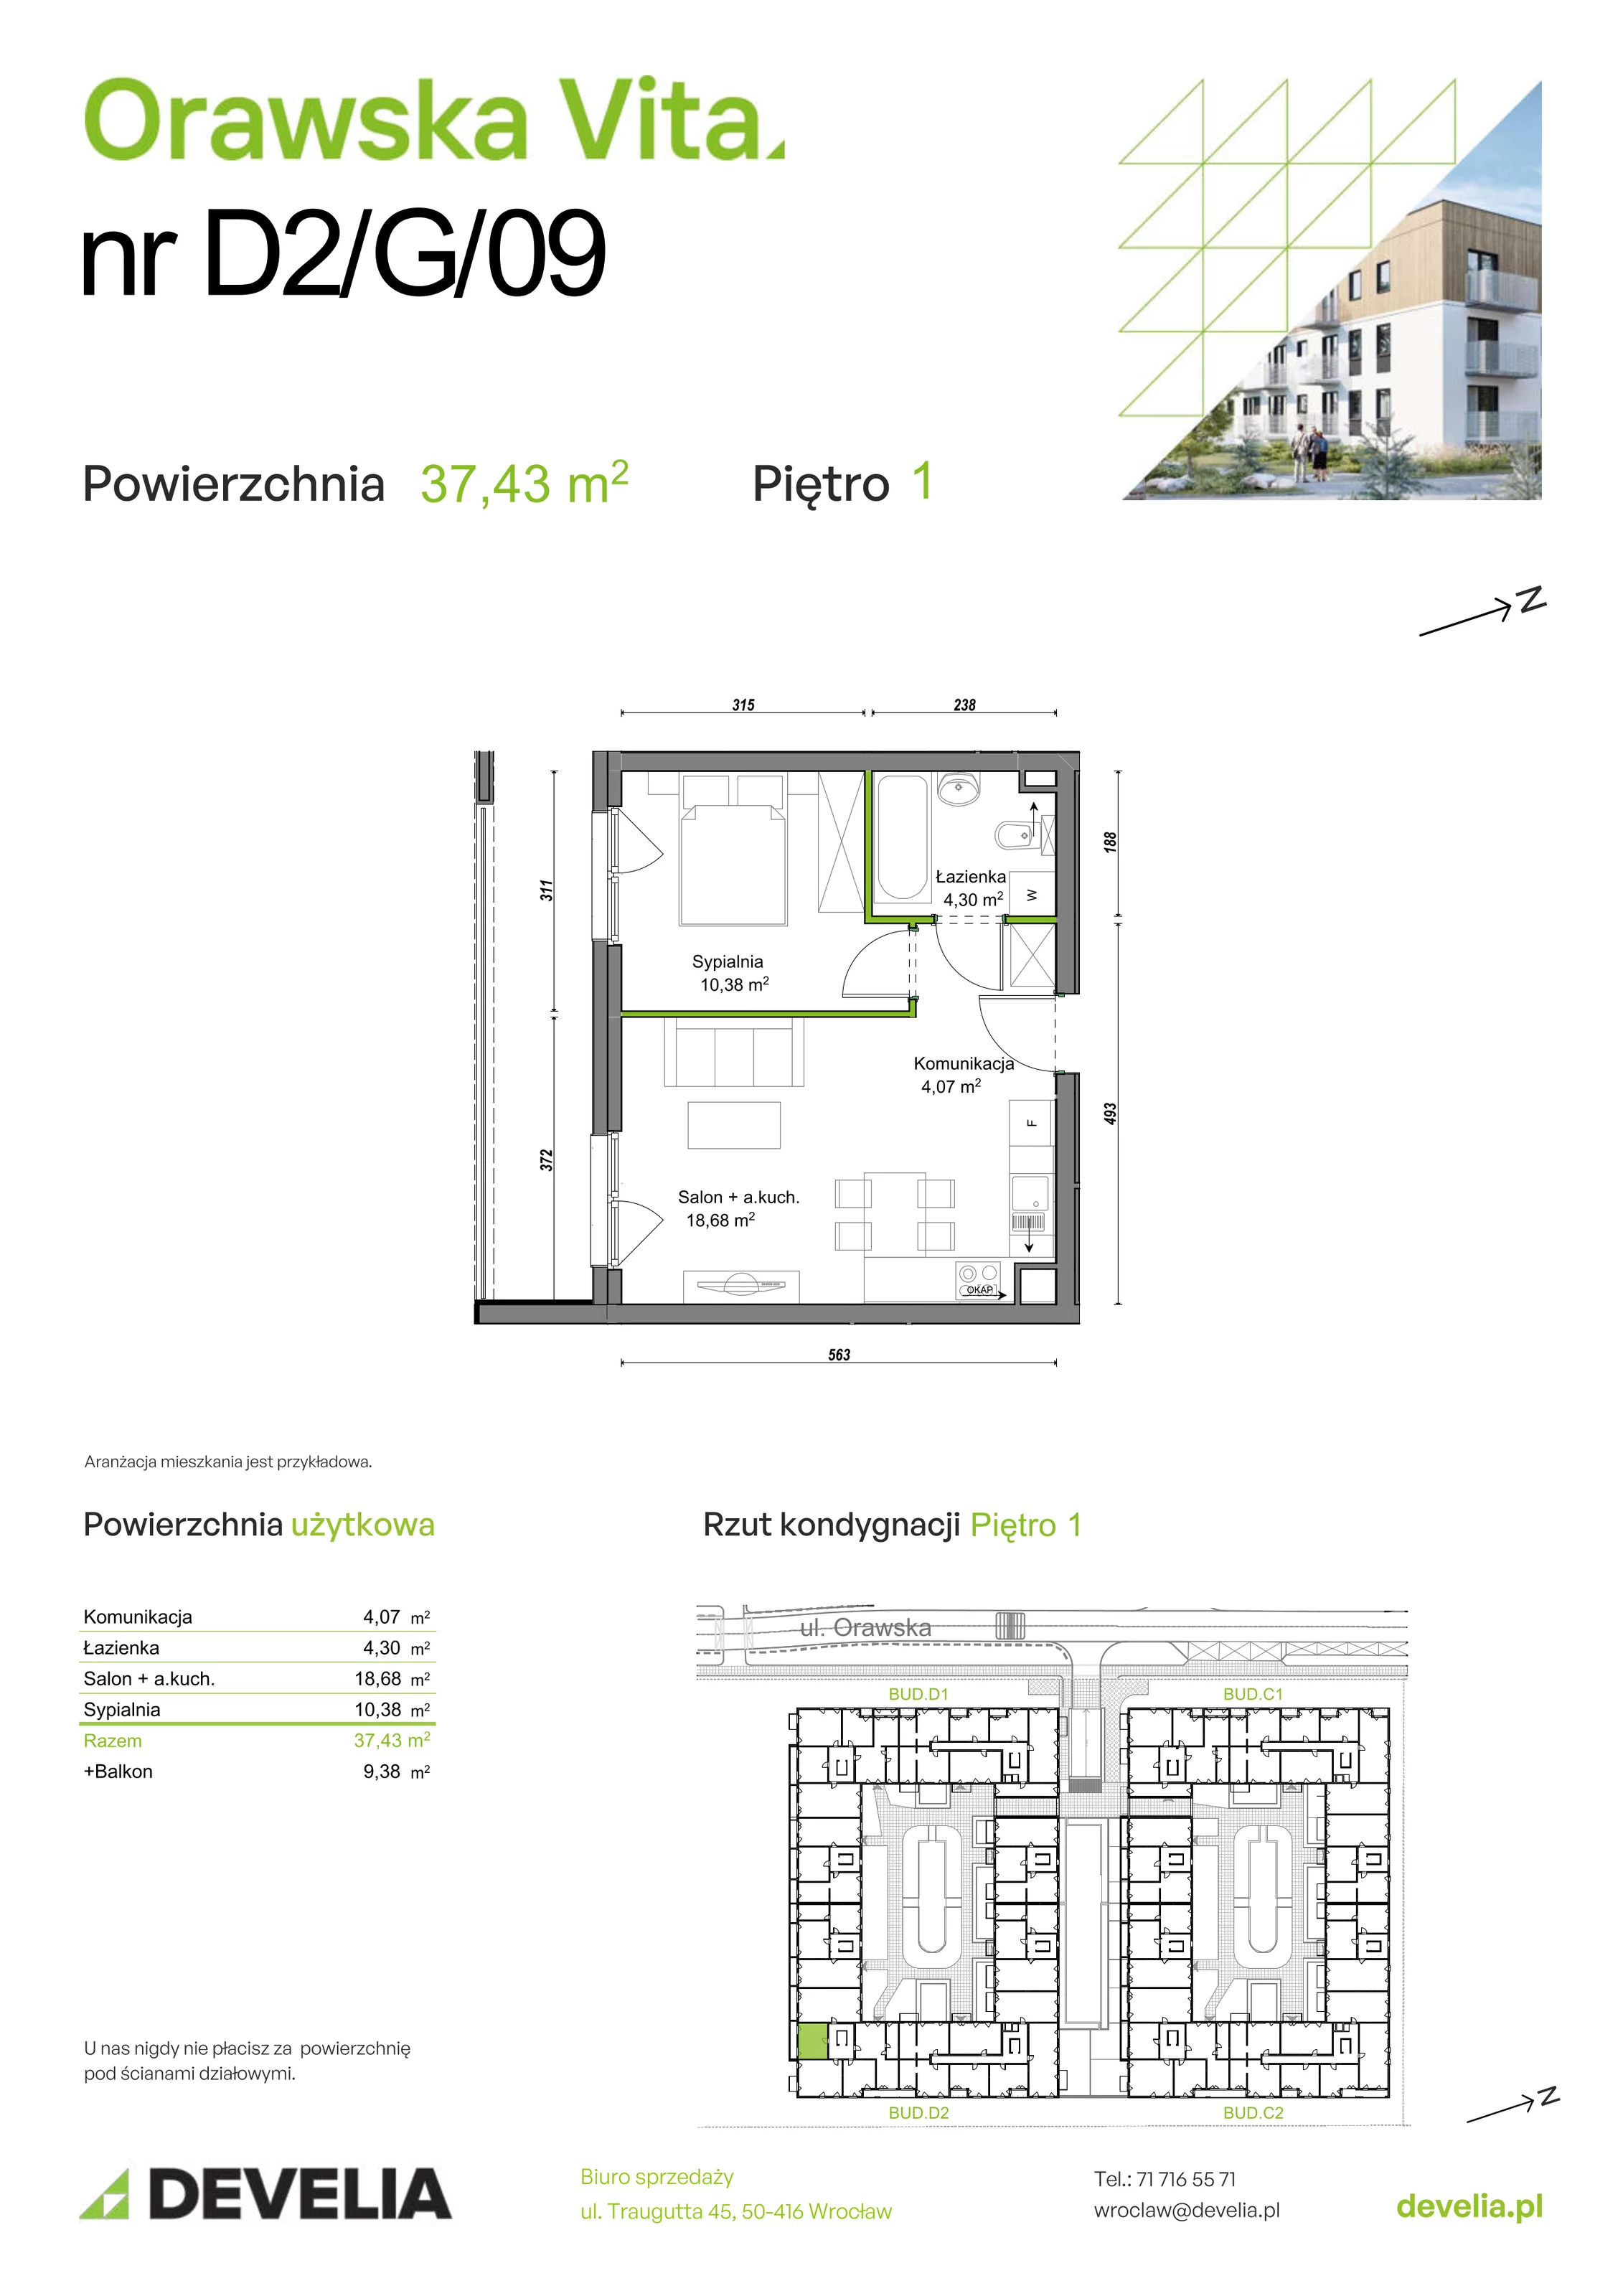 Mieszkanie 37,43 m², piętro 1, oferta nr D2/G/09, Orawska Vita, Wrocław, Ołtaszyn, Krzyki, ul. Orawska 73